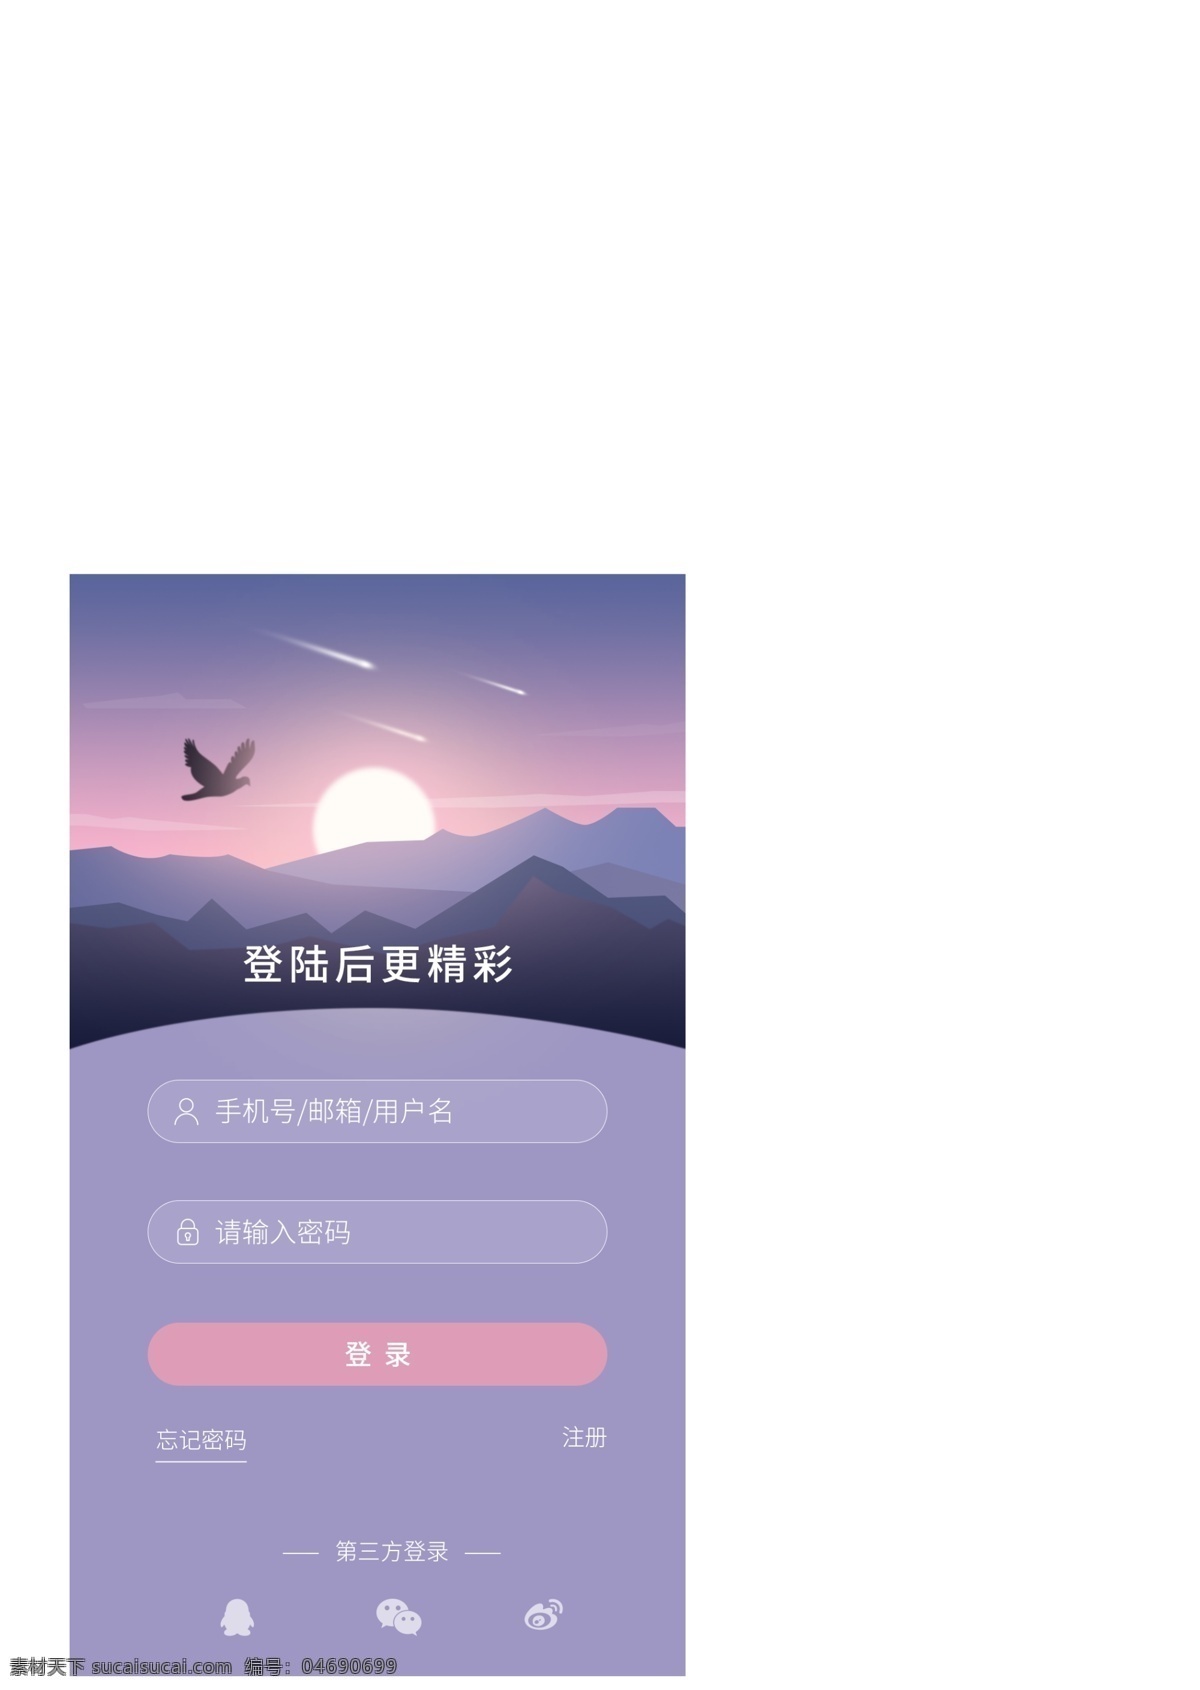 旅游 app 登录 注 册页 渐变 插画 风景 太阳 紫色 粉色 高山